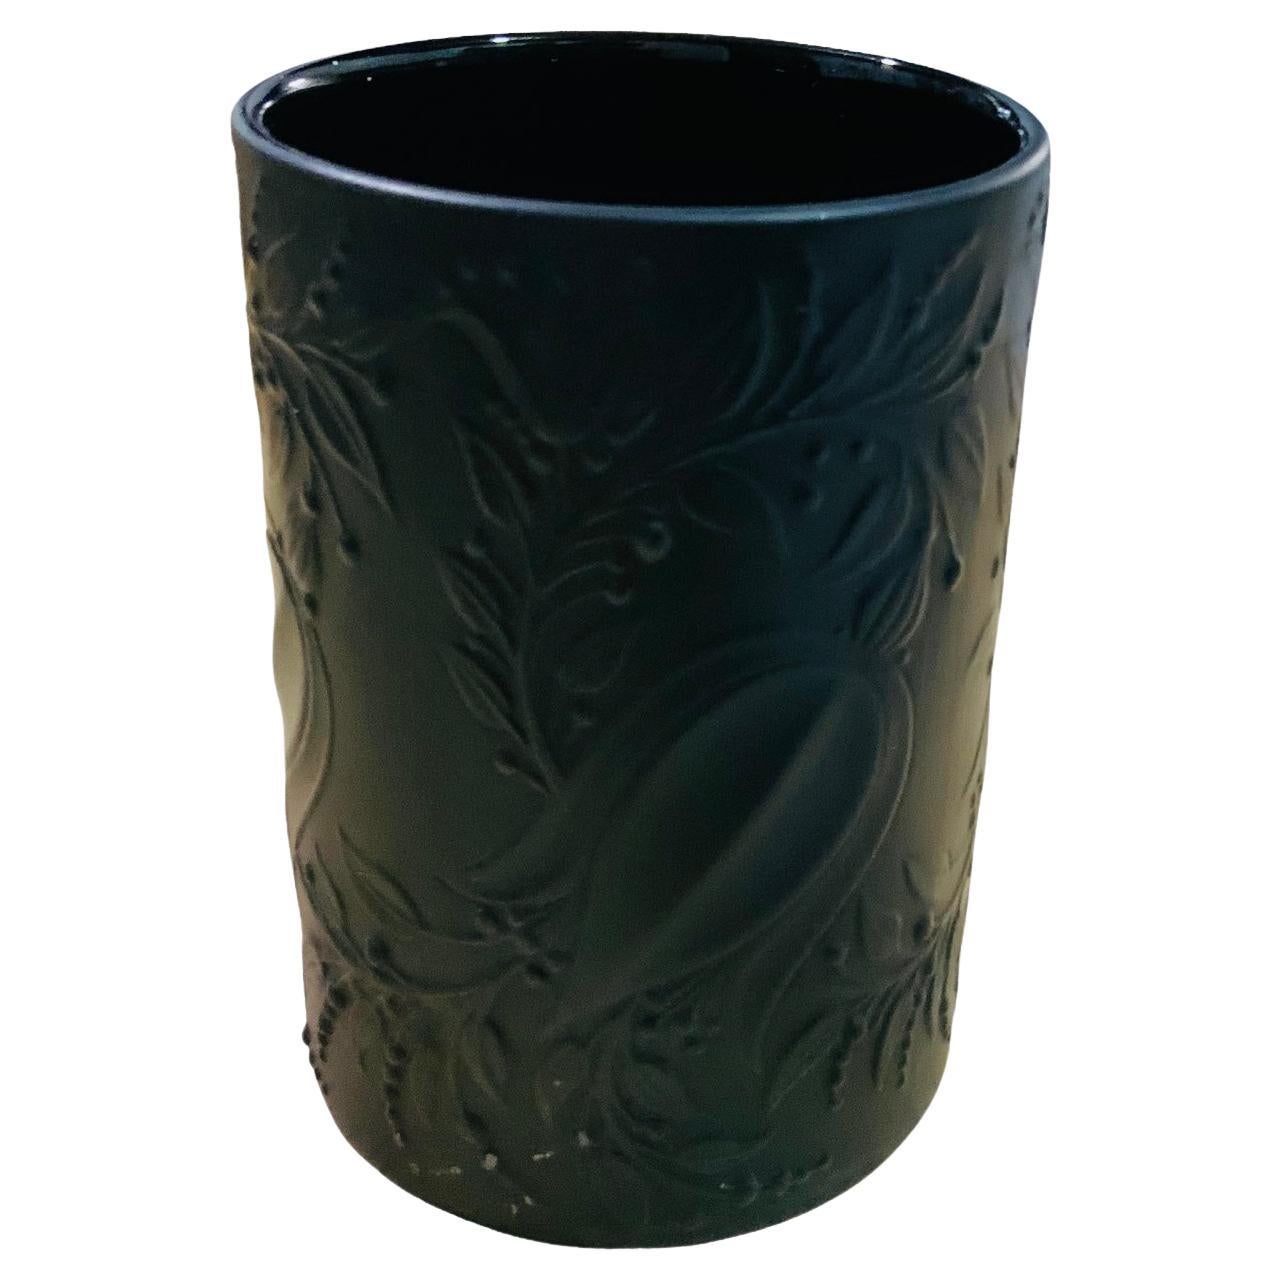 Rosenthal Studio Bjorn Winblad Black Porcelain Small Vase For Sale